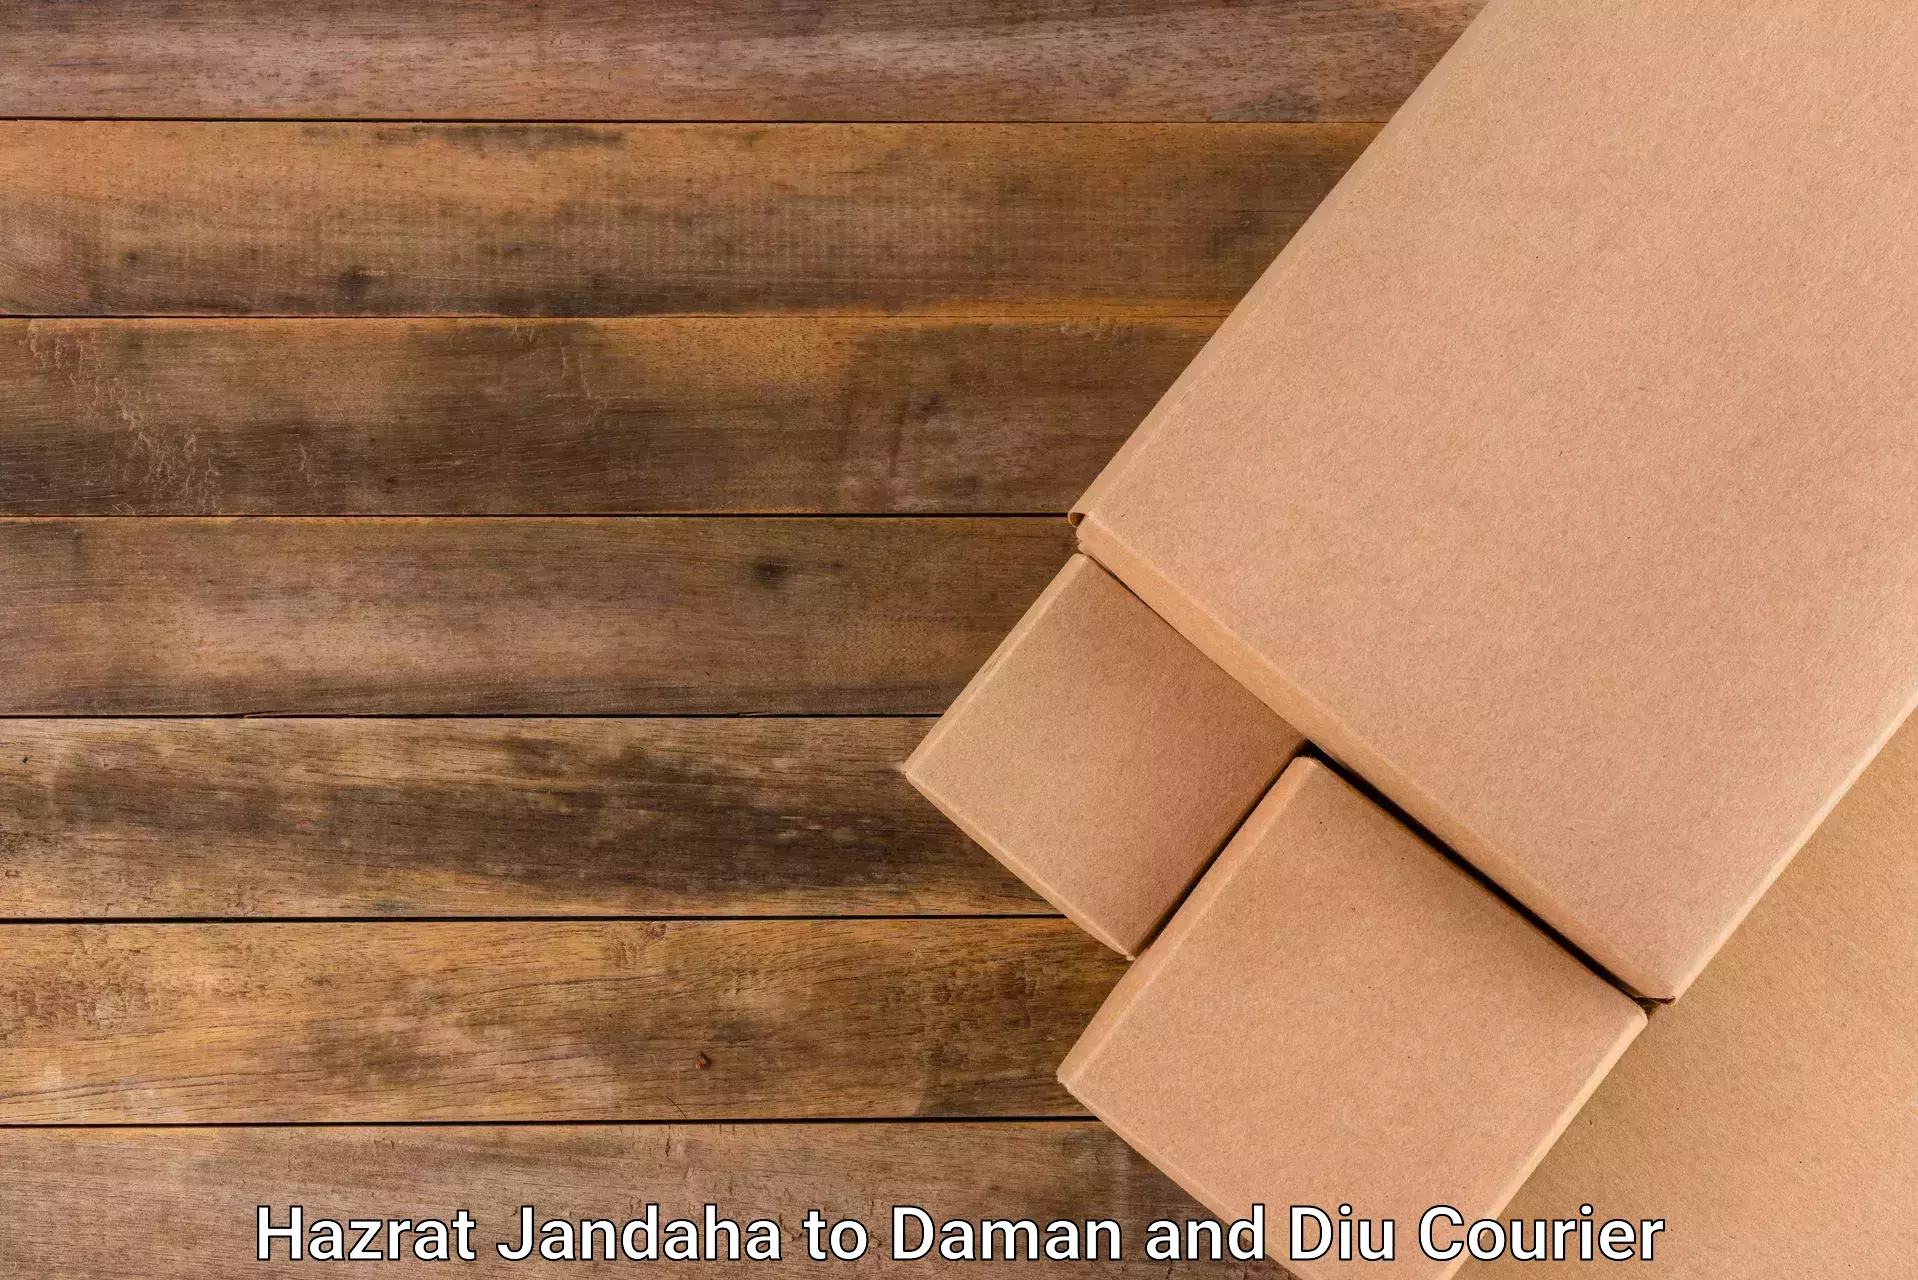 Discount courier rates Hazrat Jandaha to Daman and Diu